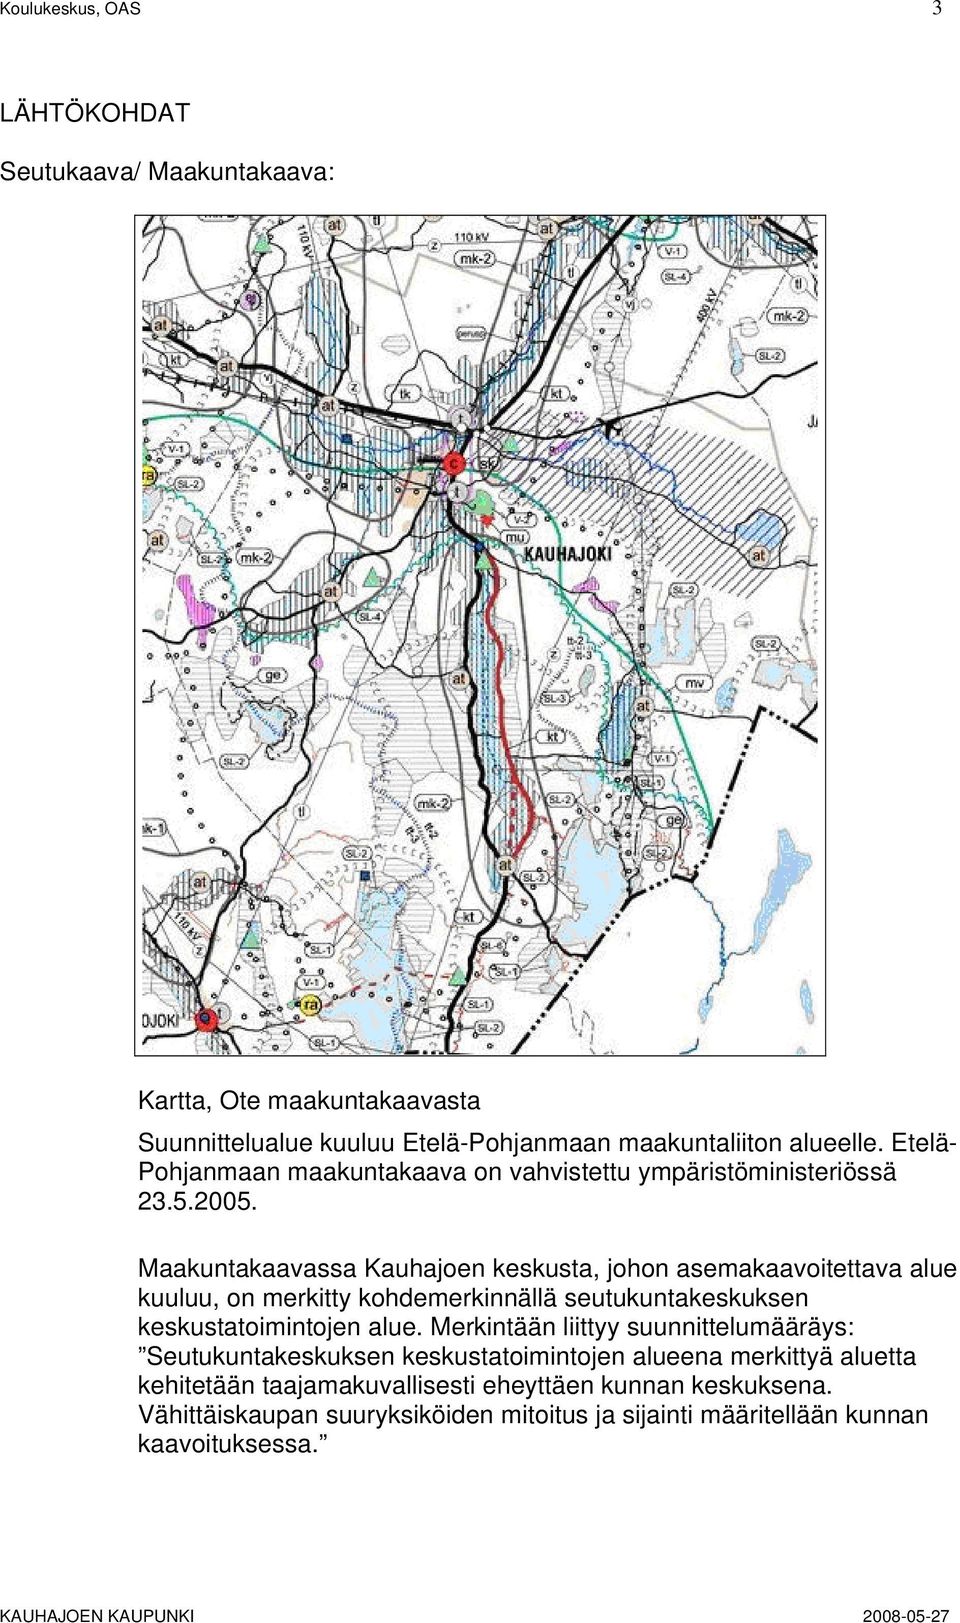 Maakuntakaavassa Kauhajoen keskusta, johon asemakaavoitettava alue kuuluu, on merkitty kohdemerkinnällä seutukuntakeskuksen keskustatoimintojen alue.